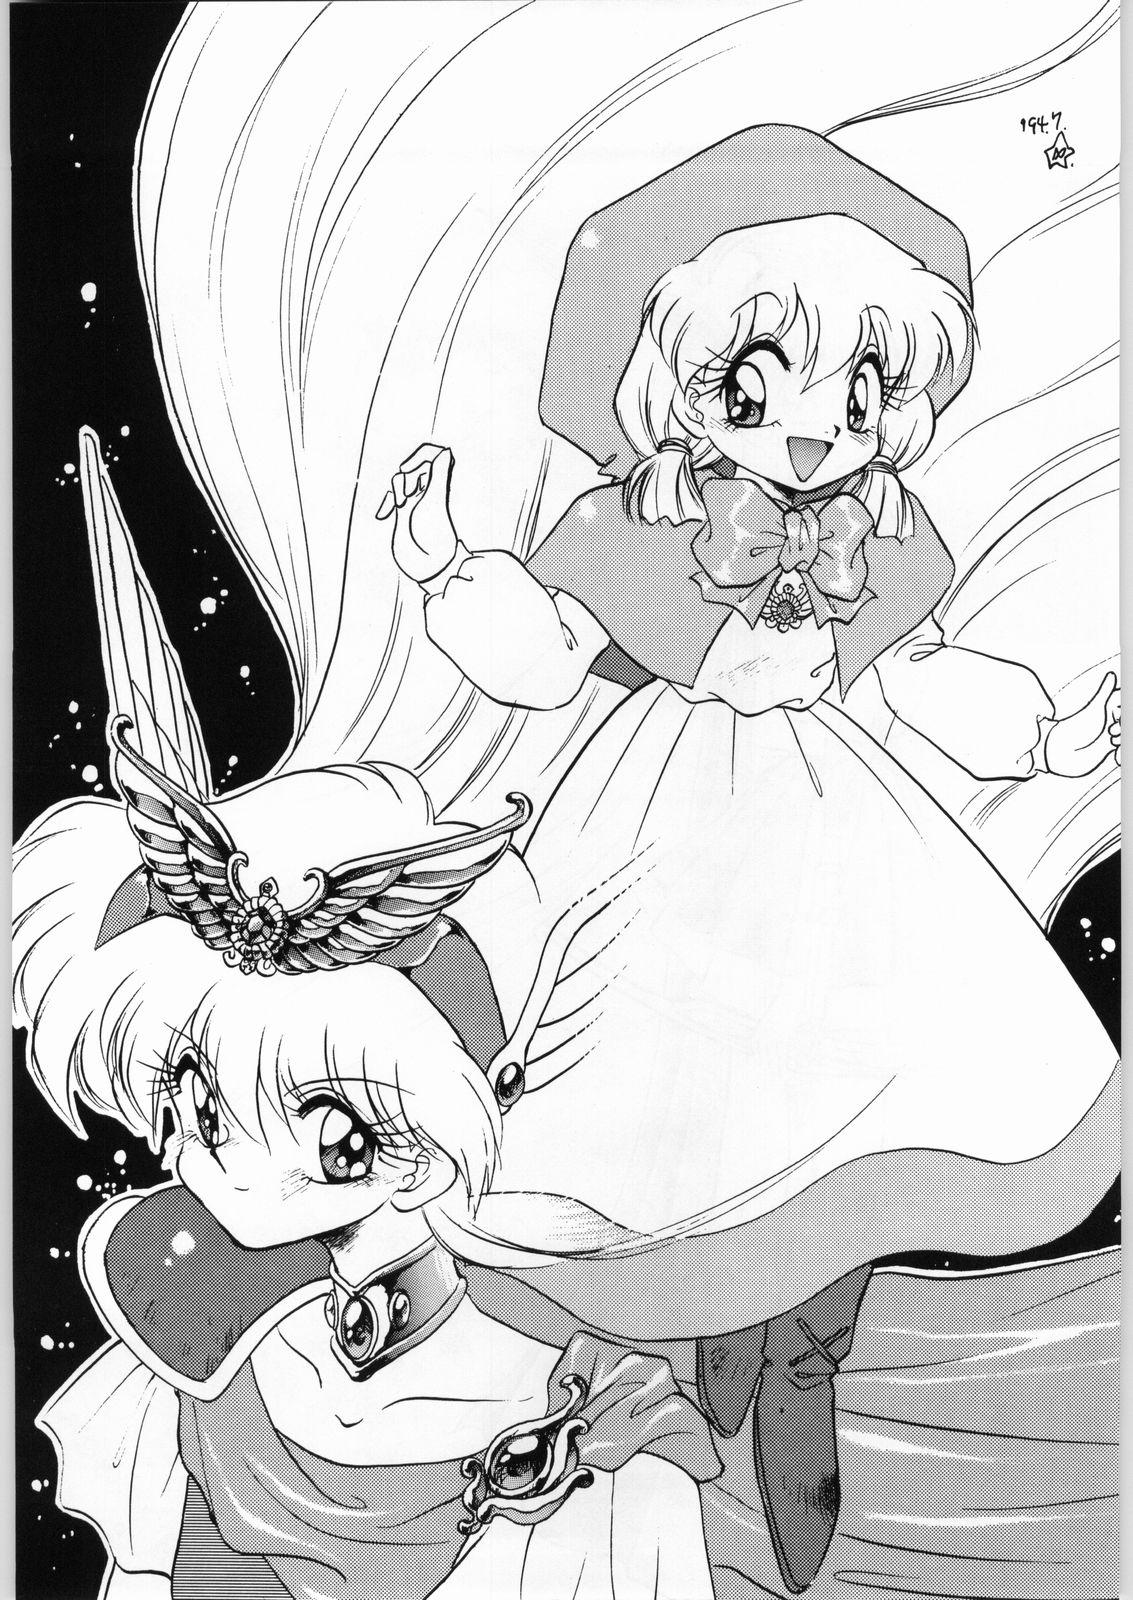 Lesbo Dance of Princess 3 - Sailor moon Tenchi muyo Akazukin cha cha Minky momo Ng knight lamune and 40 Hot - Page 4